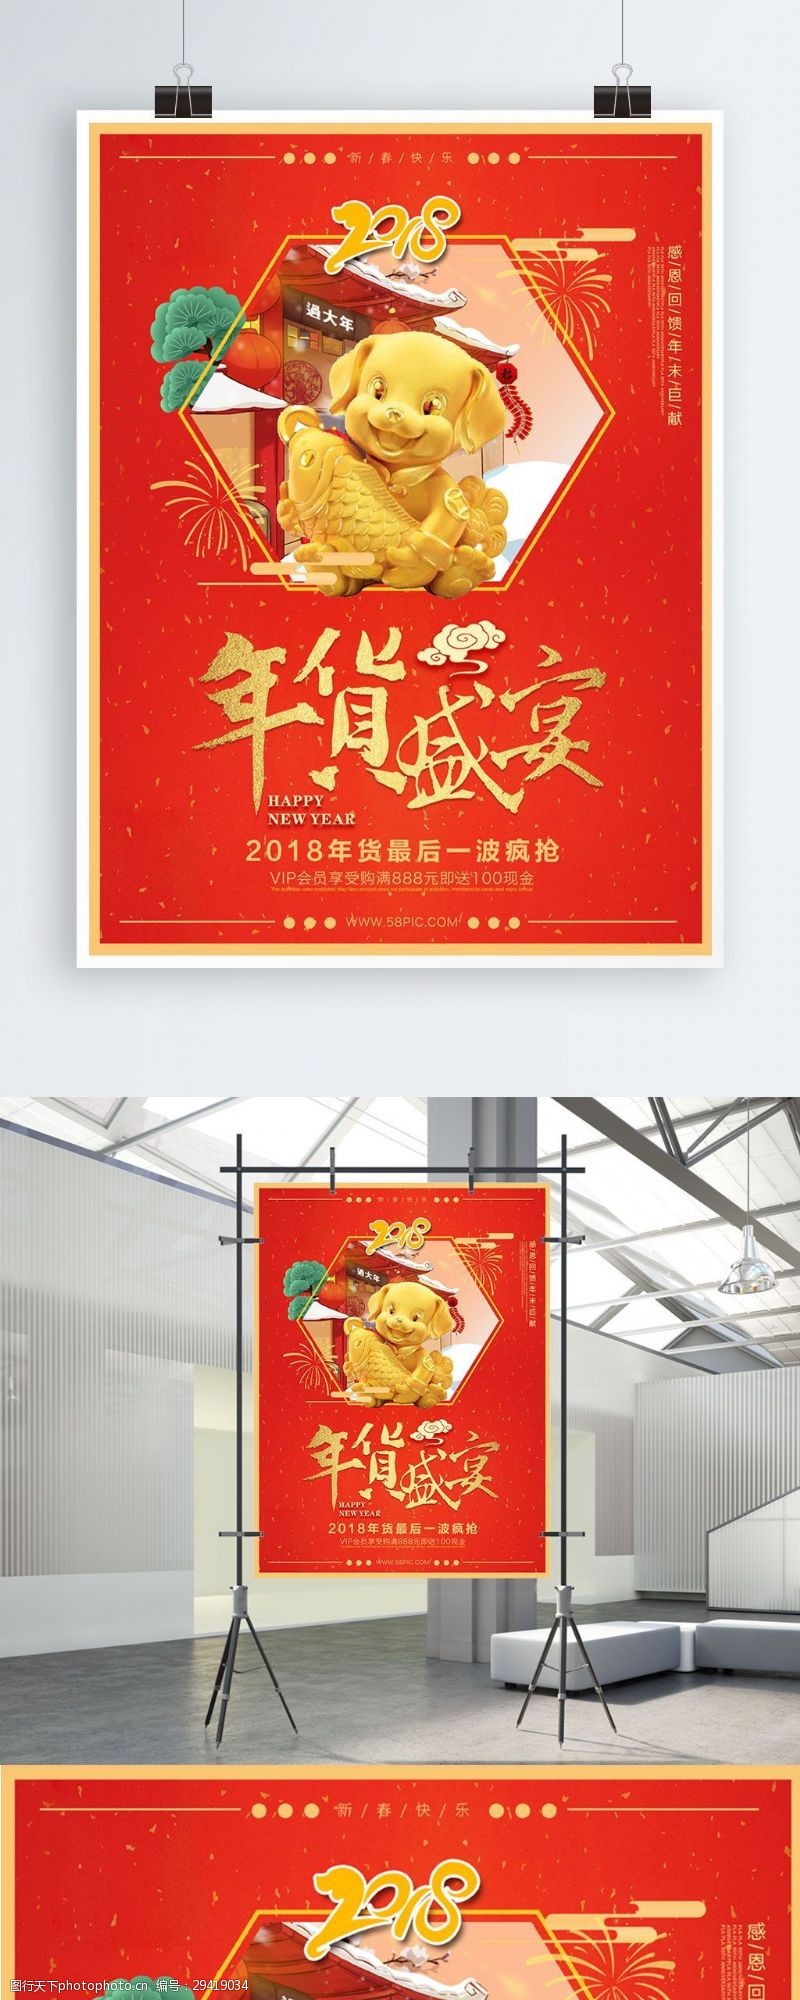 狗年吉祥喜庆中国风年货盛宴促销海报